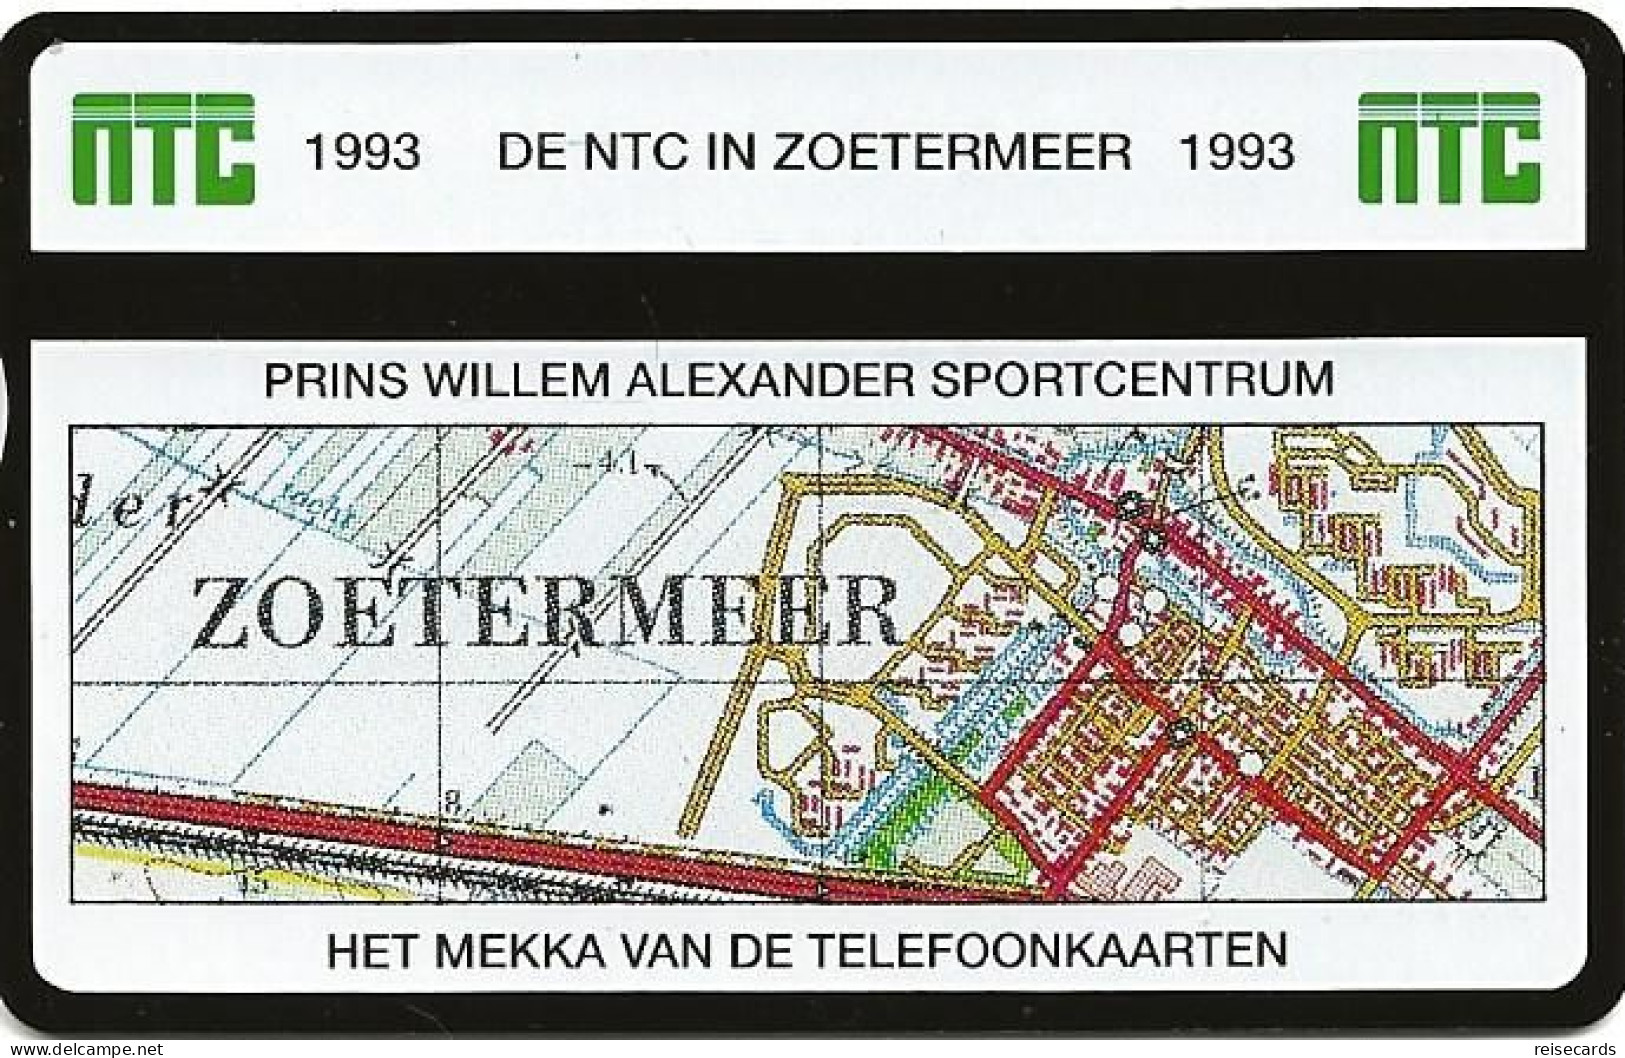 Netherlands: Ptt Telecom - 1993 301K NTC Telefoonkaarten Exhibition Zoetermeer 93. Mint - Private